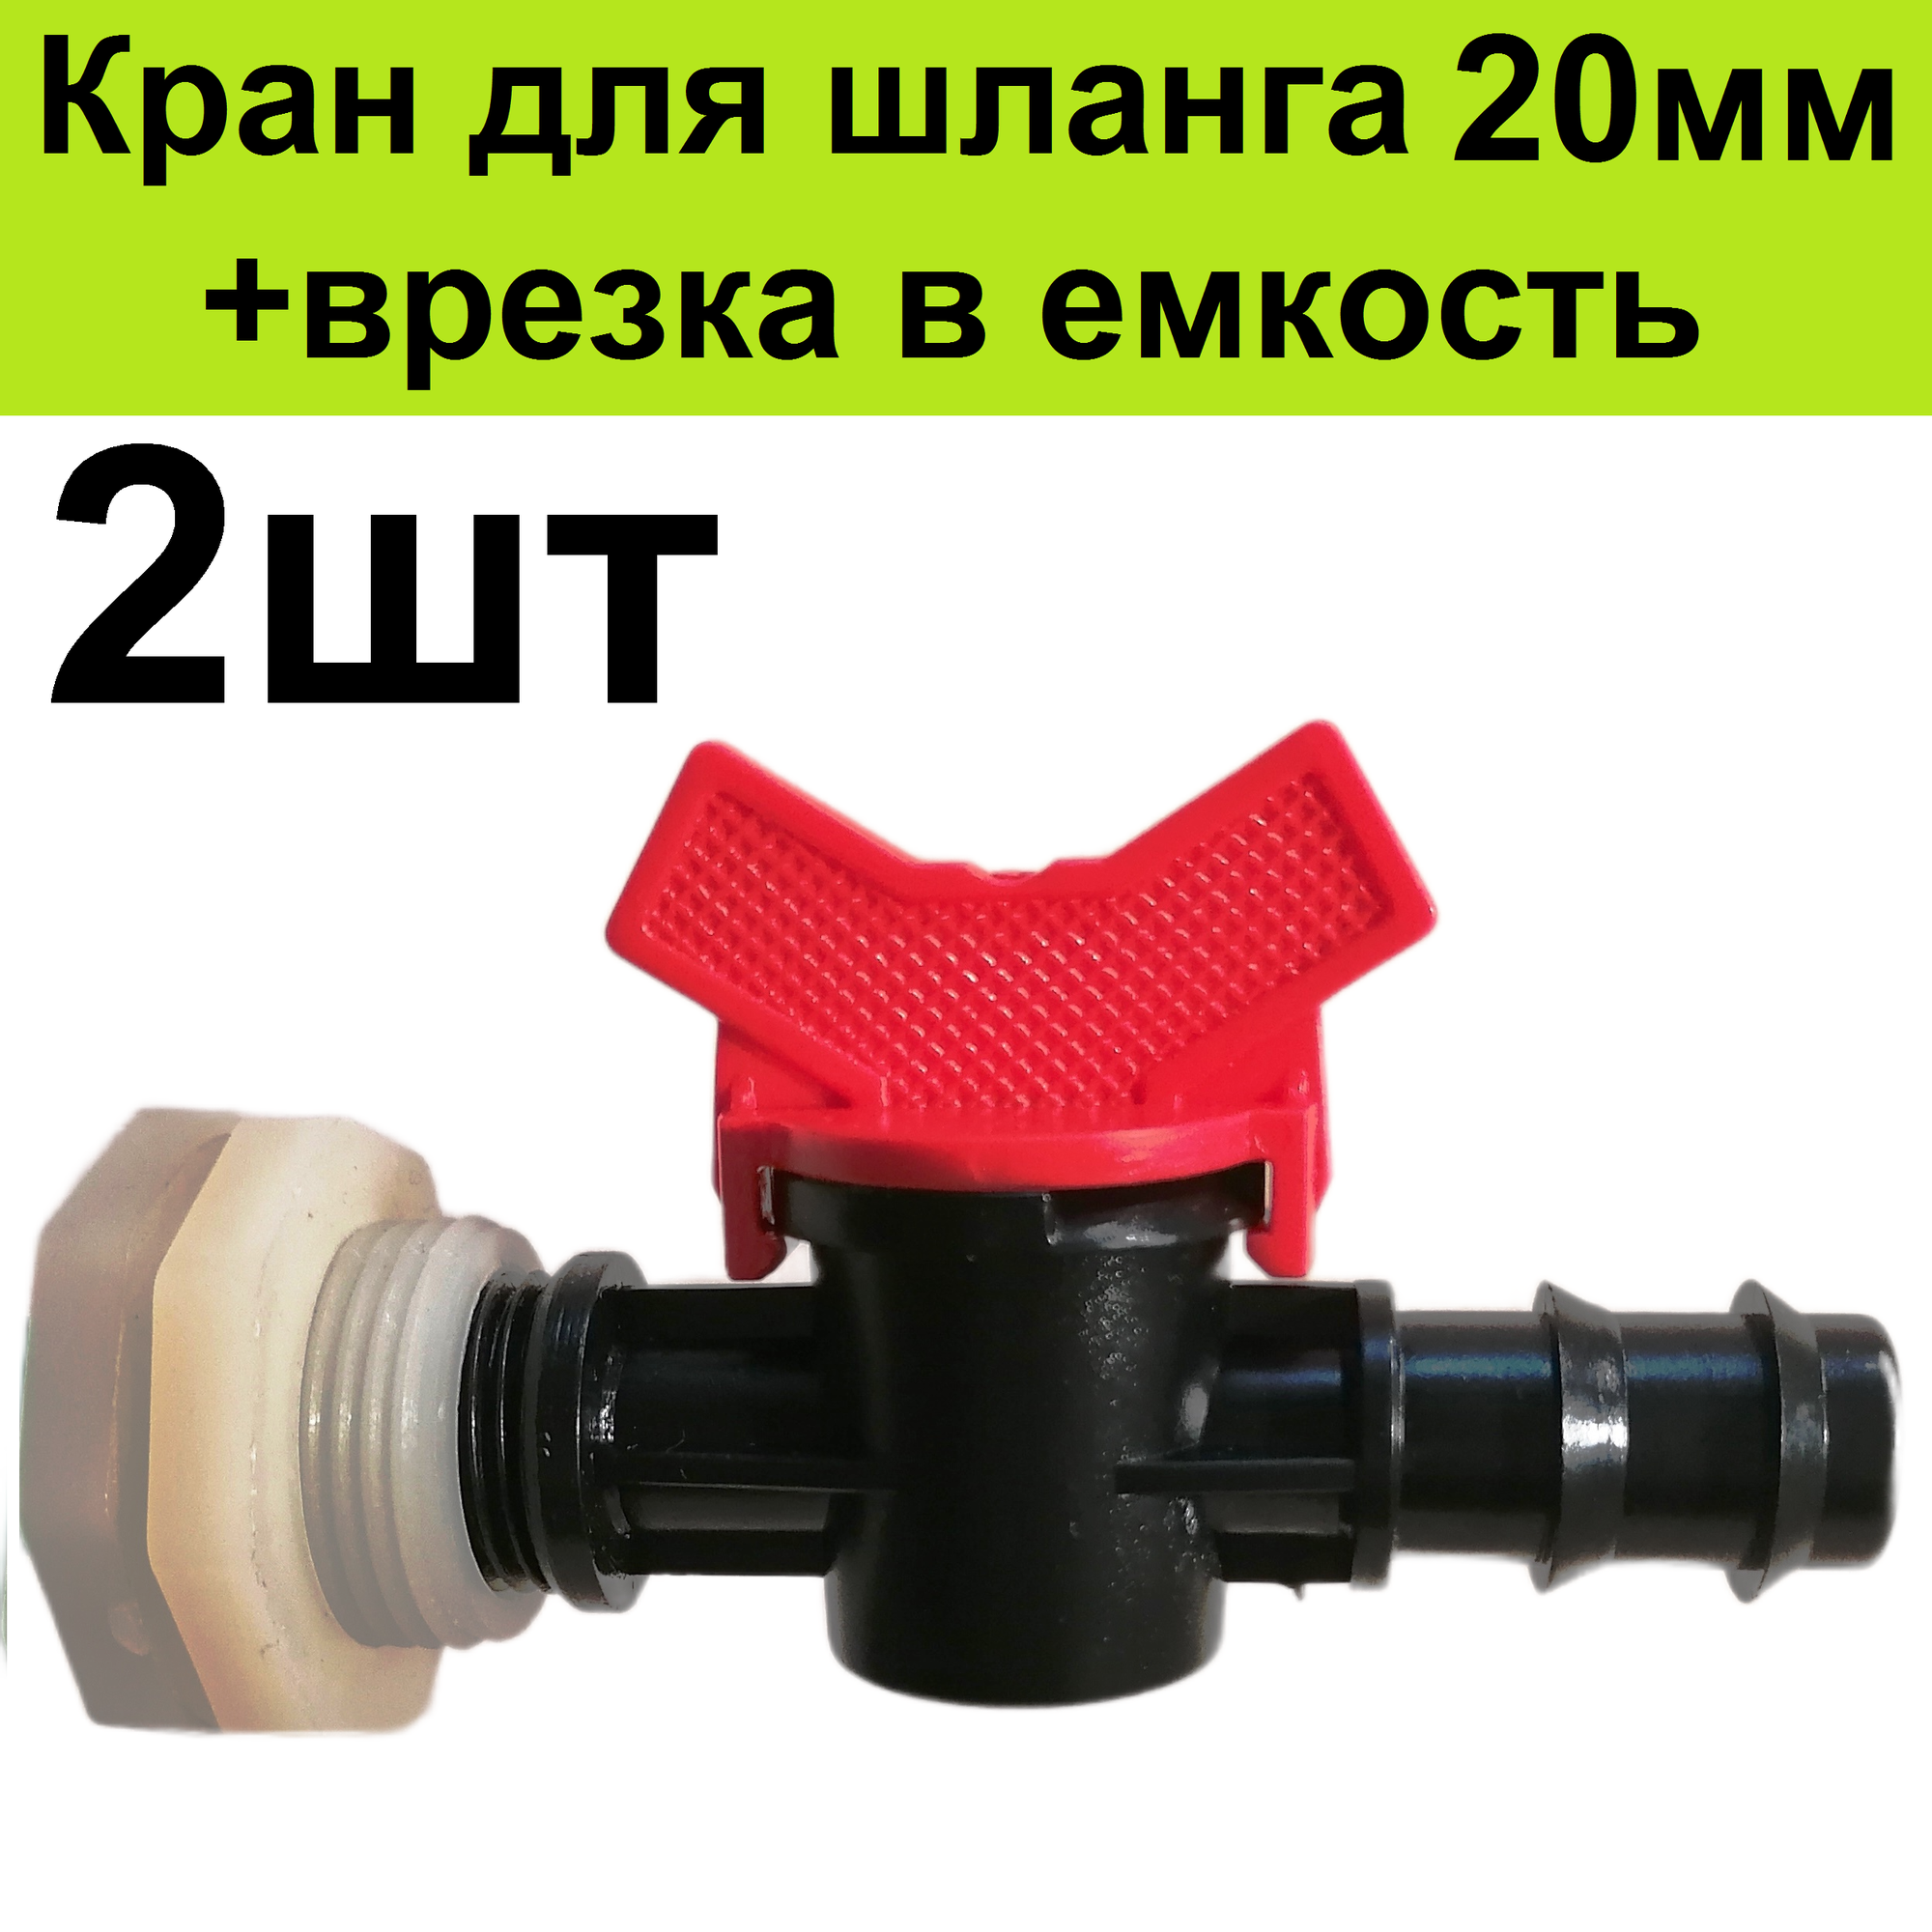 Кран (2шт) в емкость бочку для трубки 20 мм +врезка 2шт в пластиковый бак для шланга капельного полива